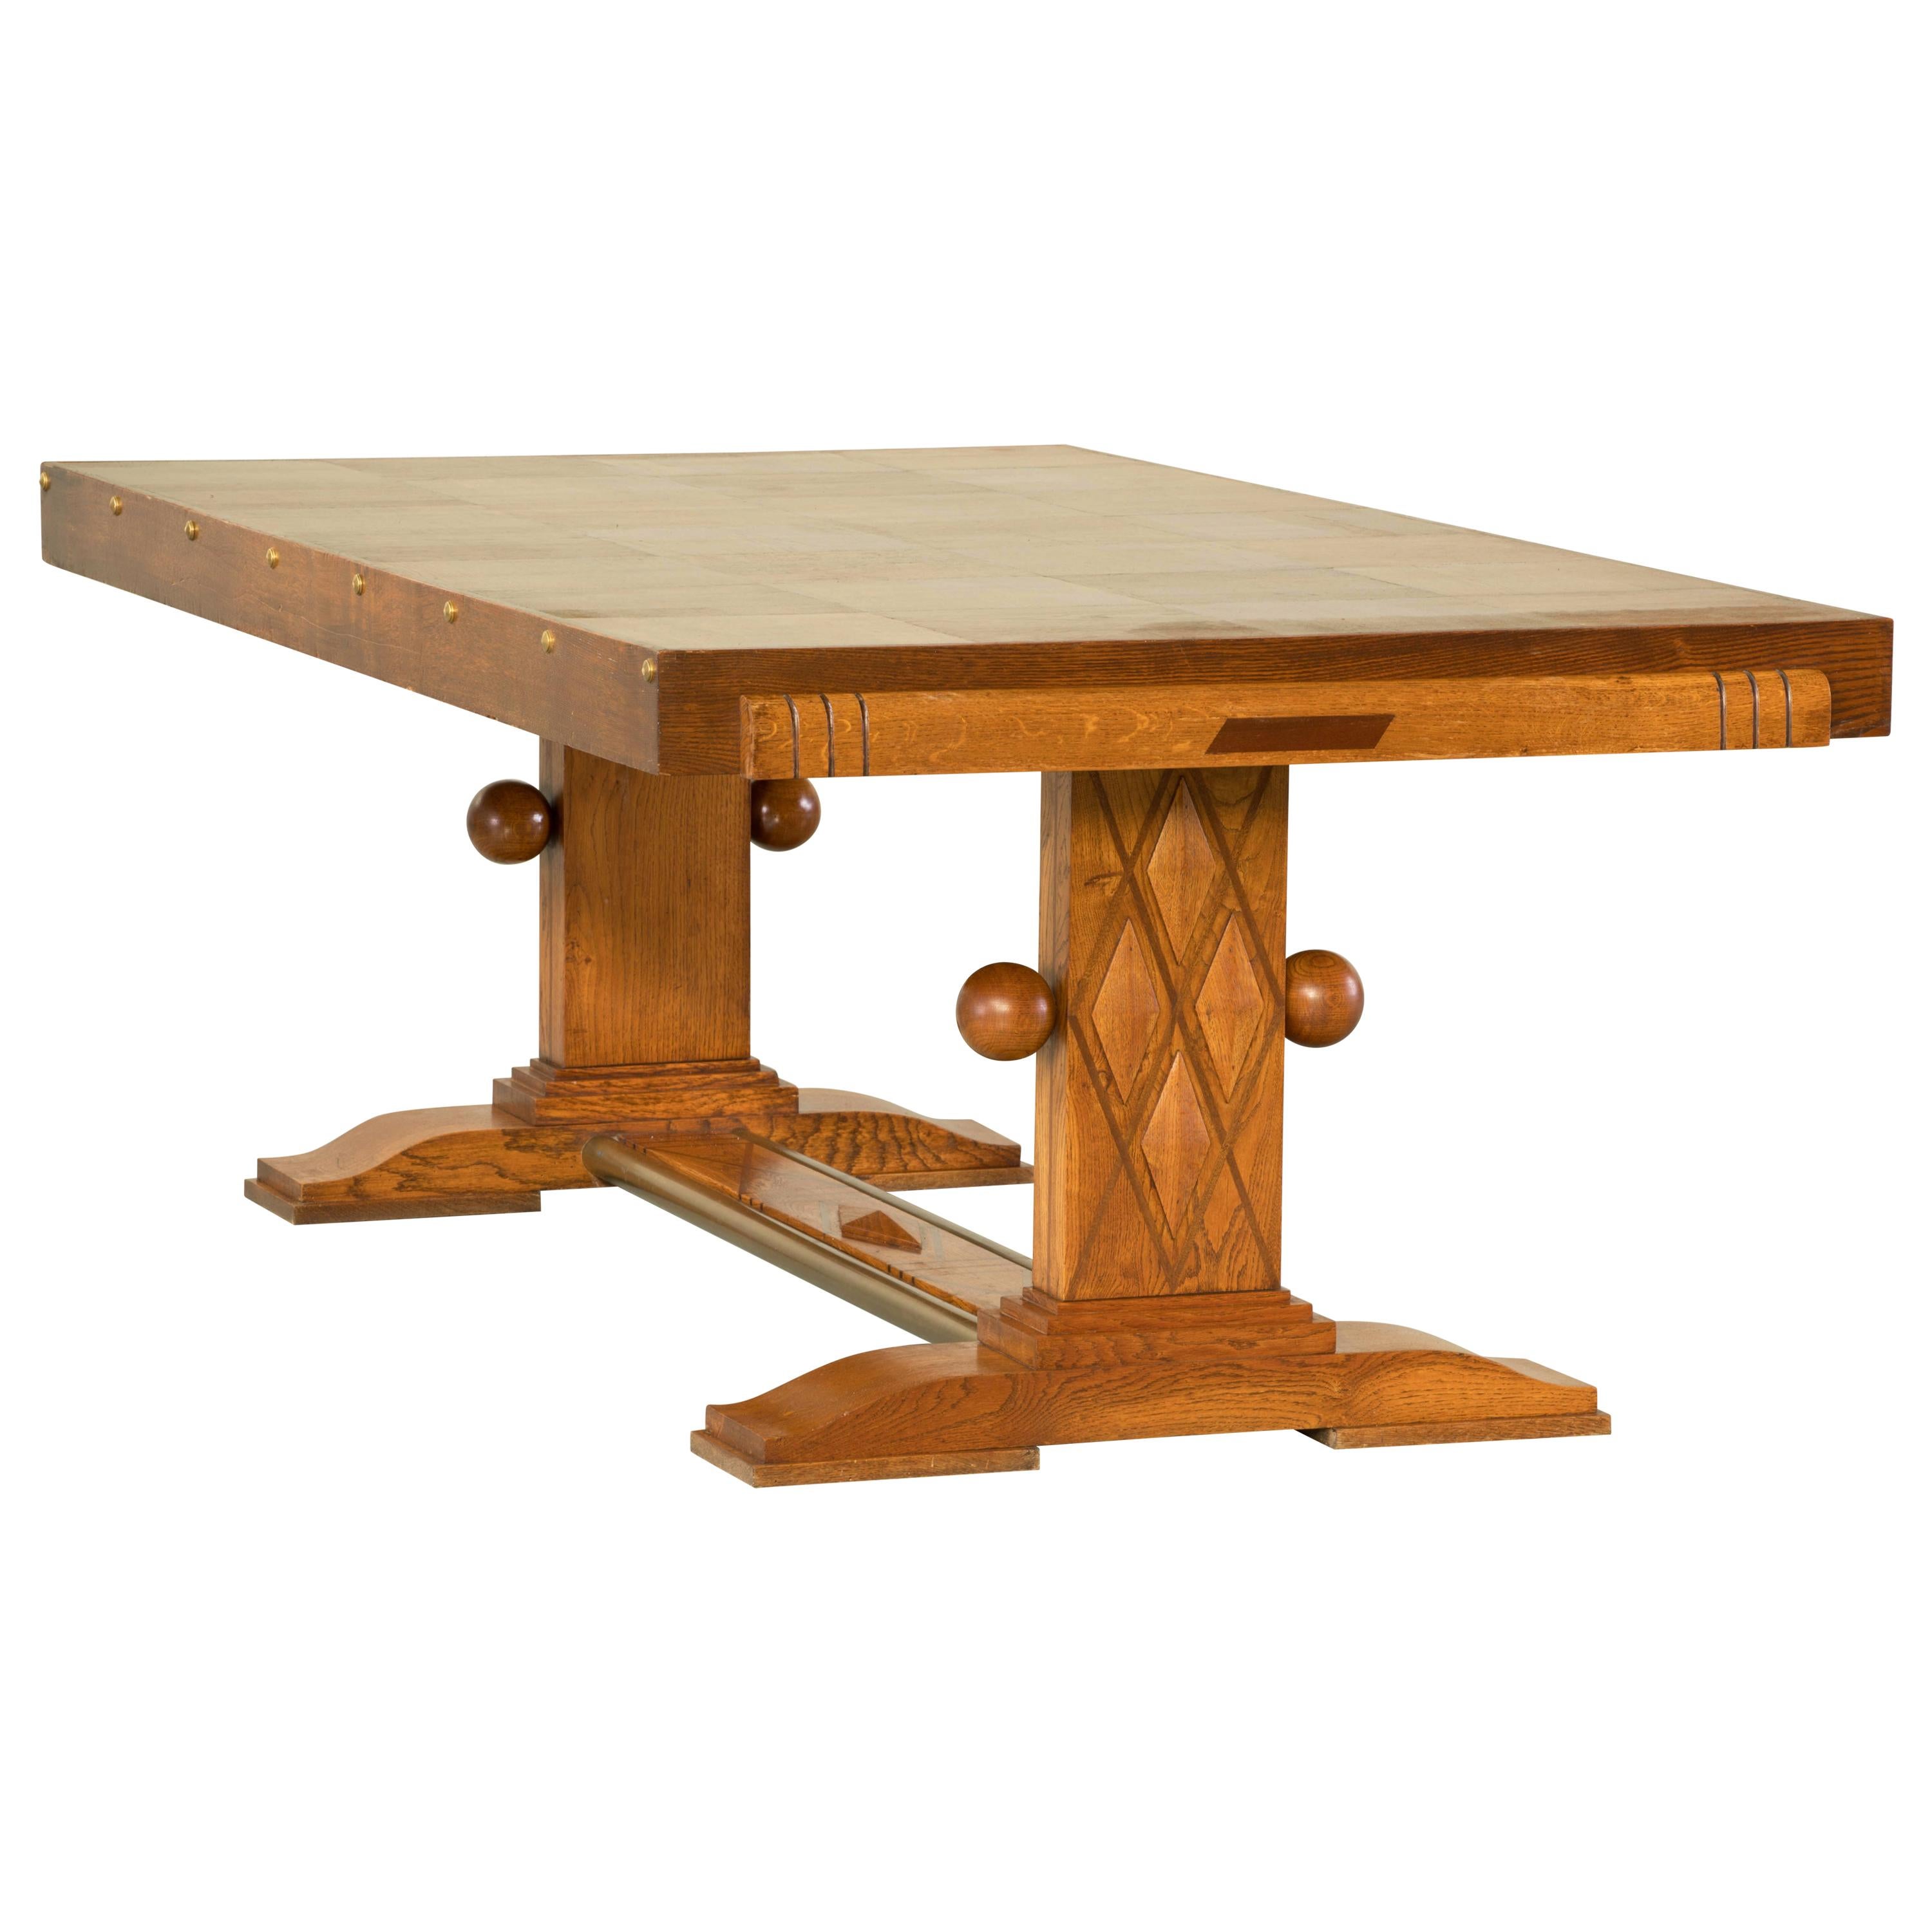 Esstisch, Eiche, Frankreich, 1930er Jahre, Gaston Poisson zugeschrieben.

Majestic Mitteltisch aus Eiche. Dieser Art-Déco-Tisch zeigt große Handwerkskunst. Der Sockel und die Beine sind mit schönen Schnitzereien und Holzarbeiten versehen. Die